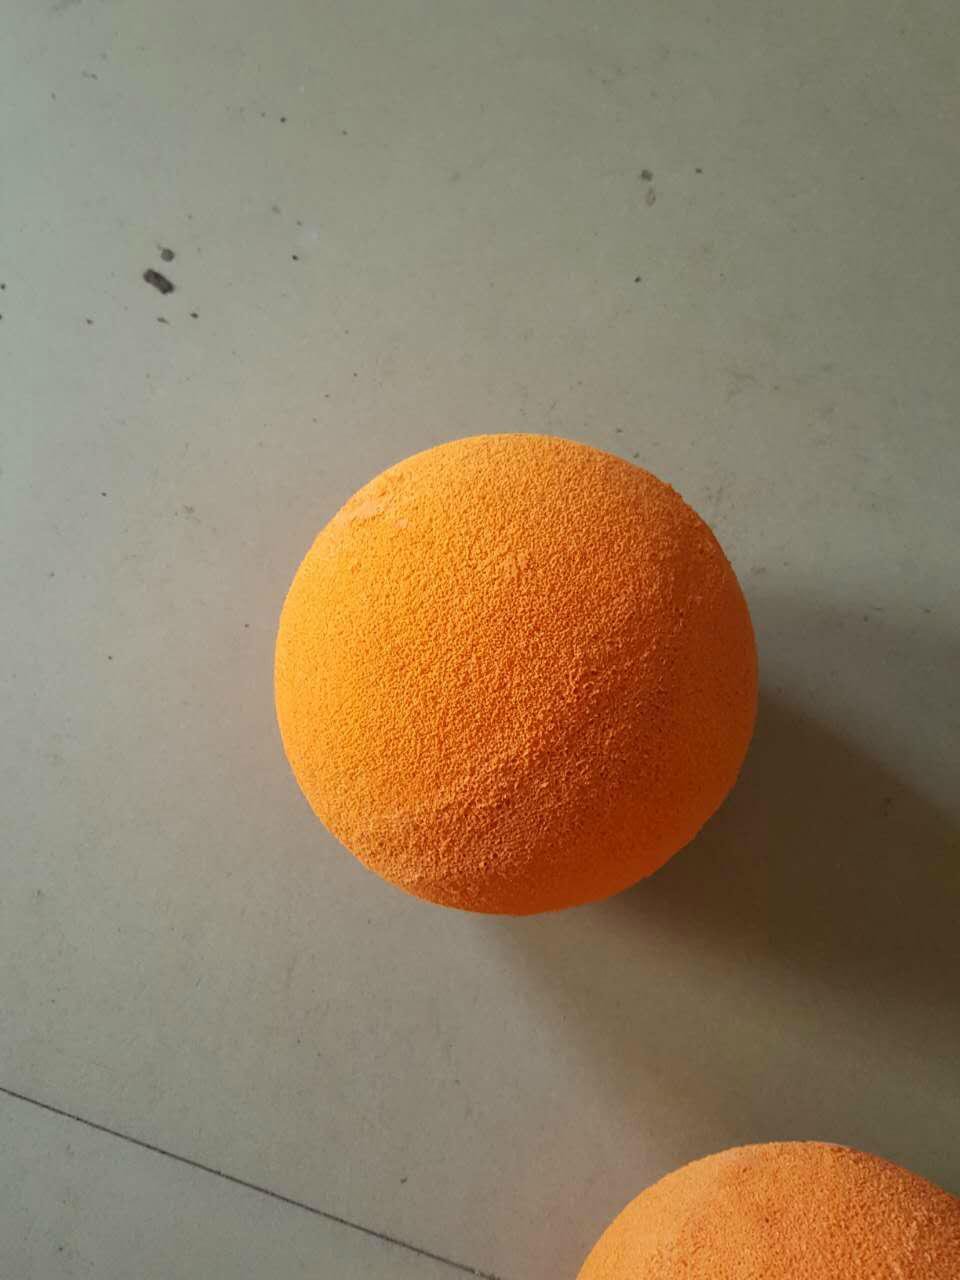 sponge ball